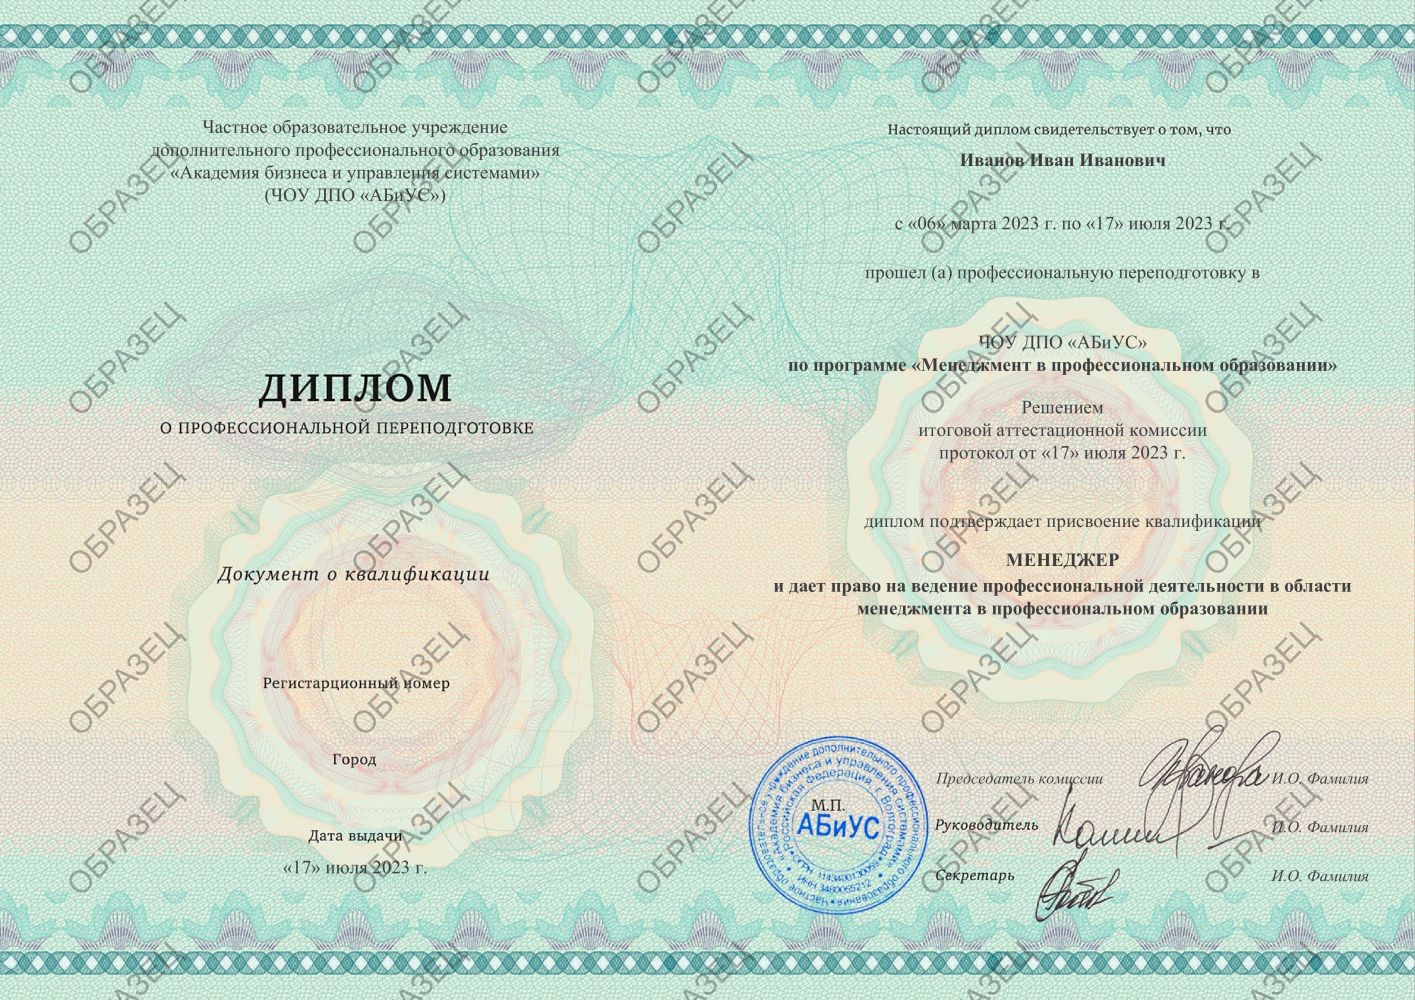 Диплом Менеджмент в профессиональном образовании 510 часов 11125 руб.